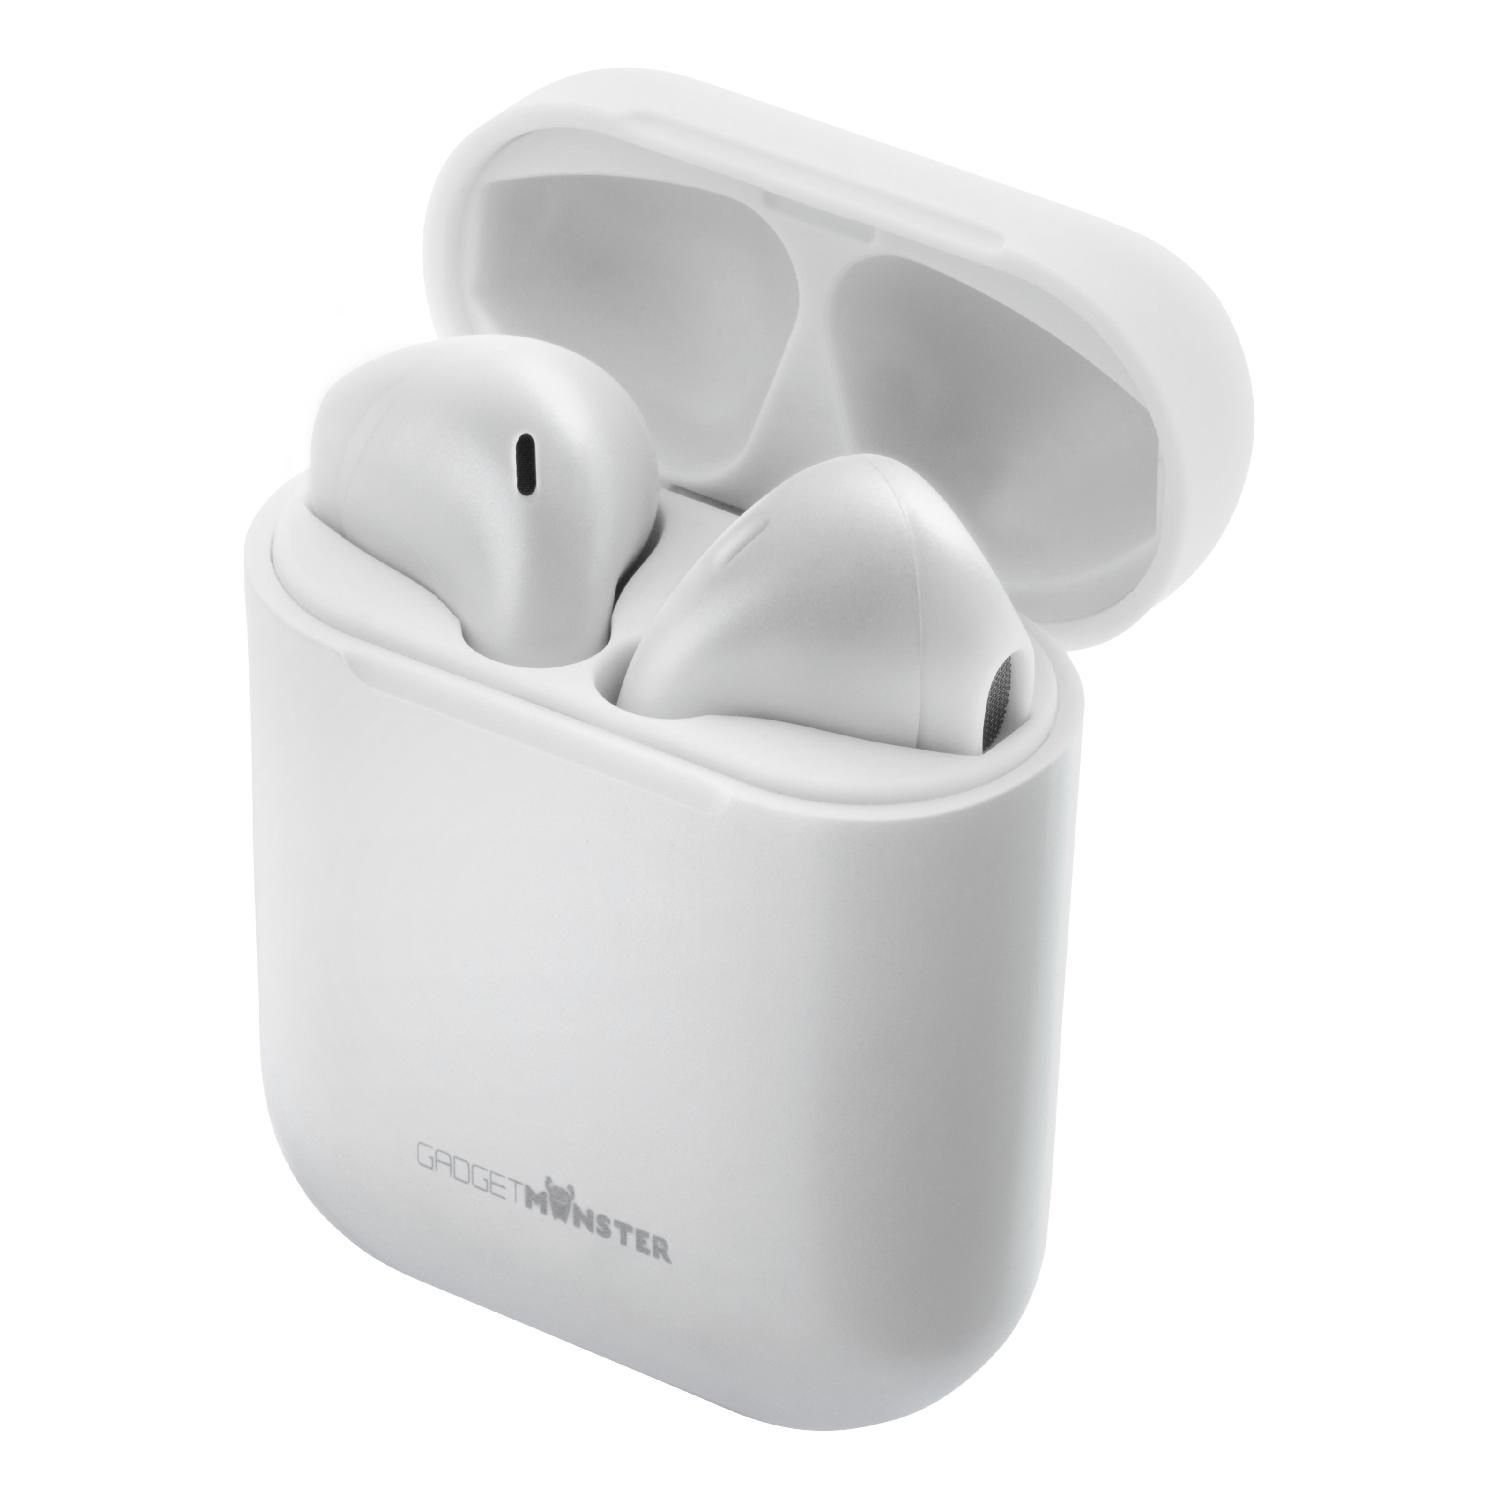 GadgetMonster TWS In-Ear Kopfhörer 18 (inkl. Bluetooth zu bis Jahre weiß Std. Herstellergarantie) Kopfhörer 5 Spielzeit 10m